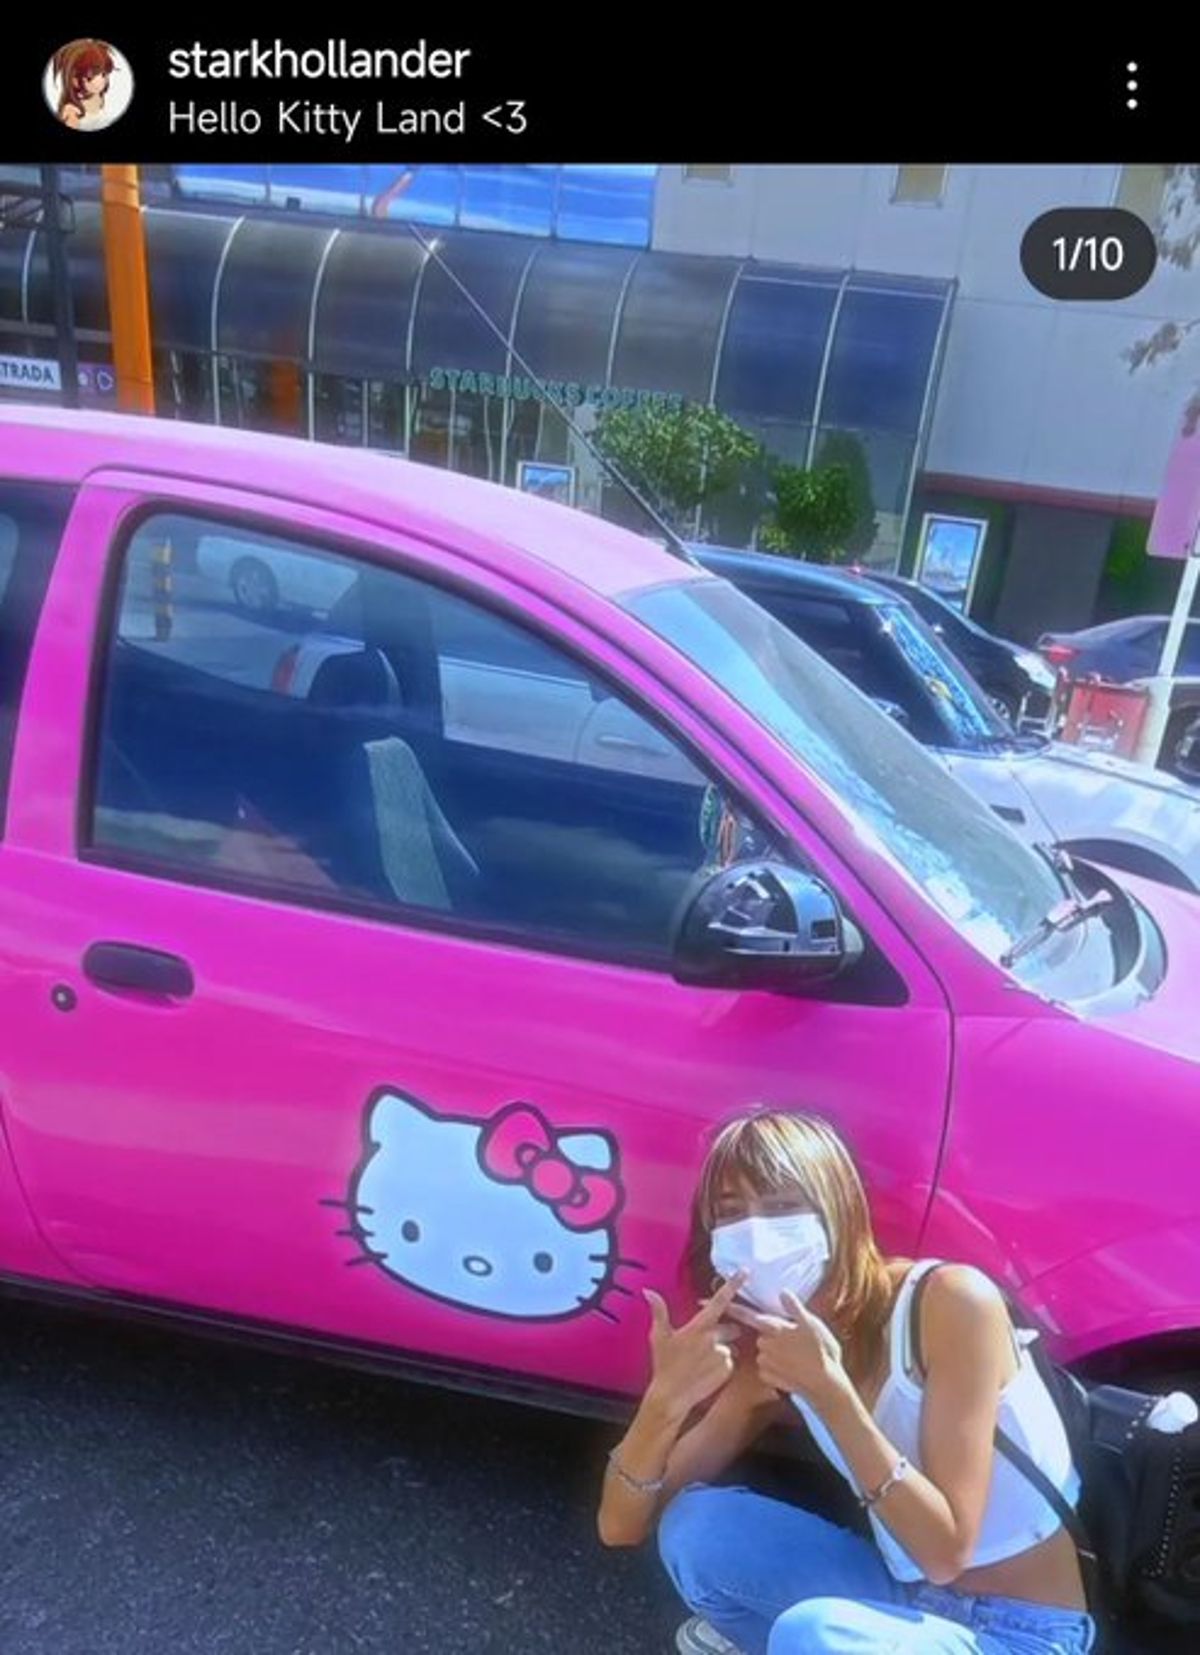 Conductora de aplicación causa furor con auto decorado con Hello Kitty: Se  devuelven a tomar fotos, Sociedad